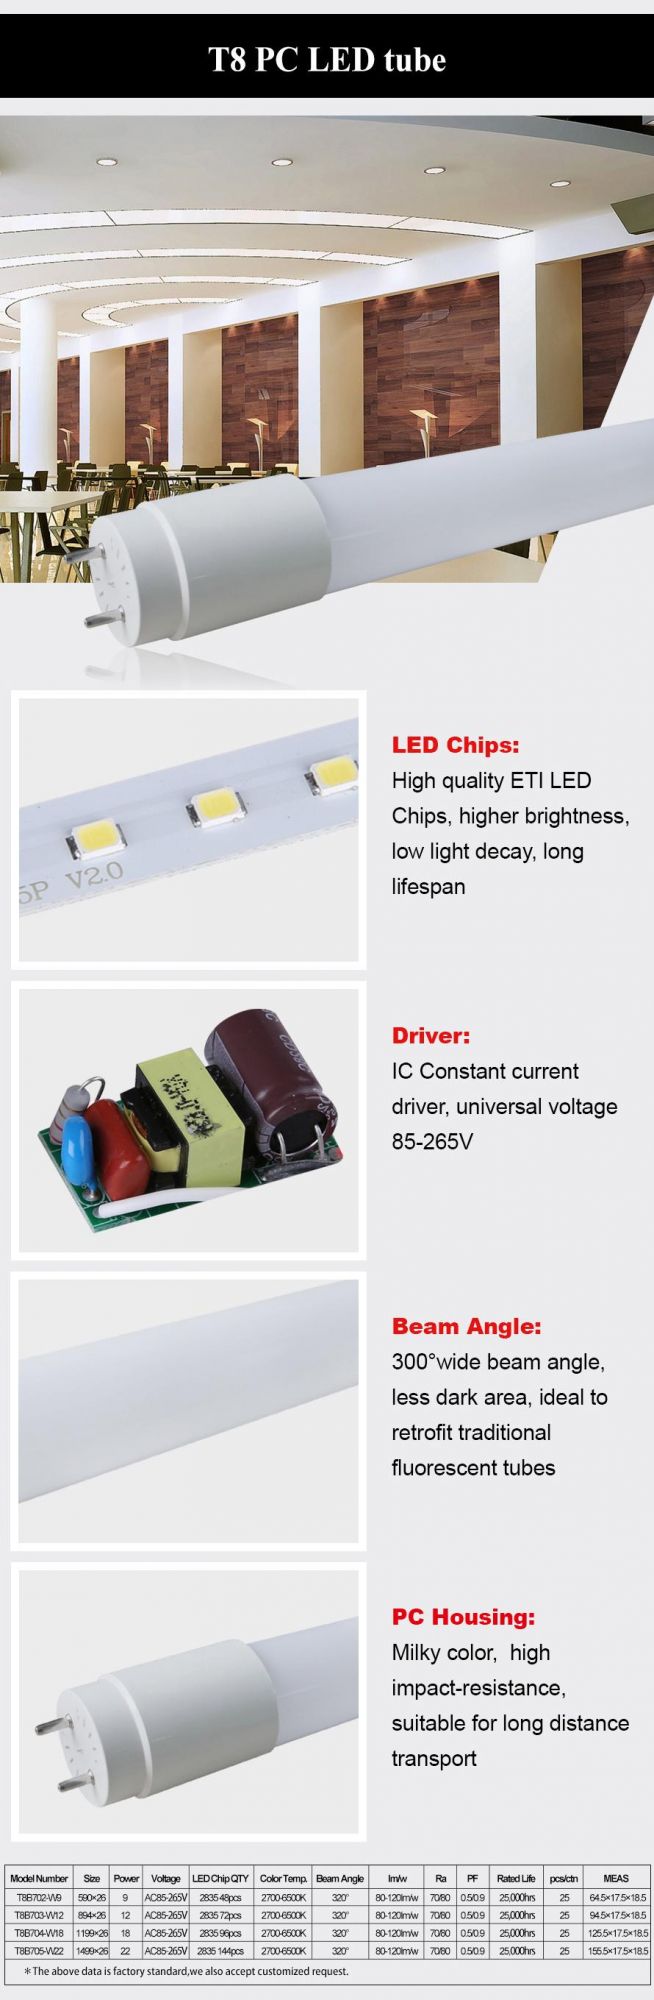 LED PC Tube, PC LED Tube, T8 PC LED Tube, T8 LED Tube, LED Tube